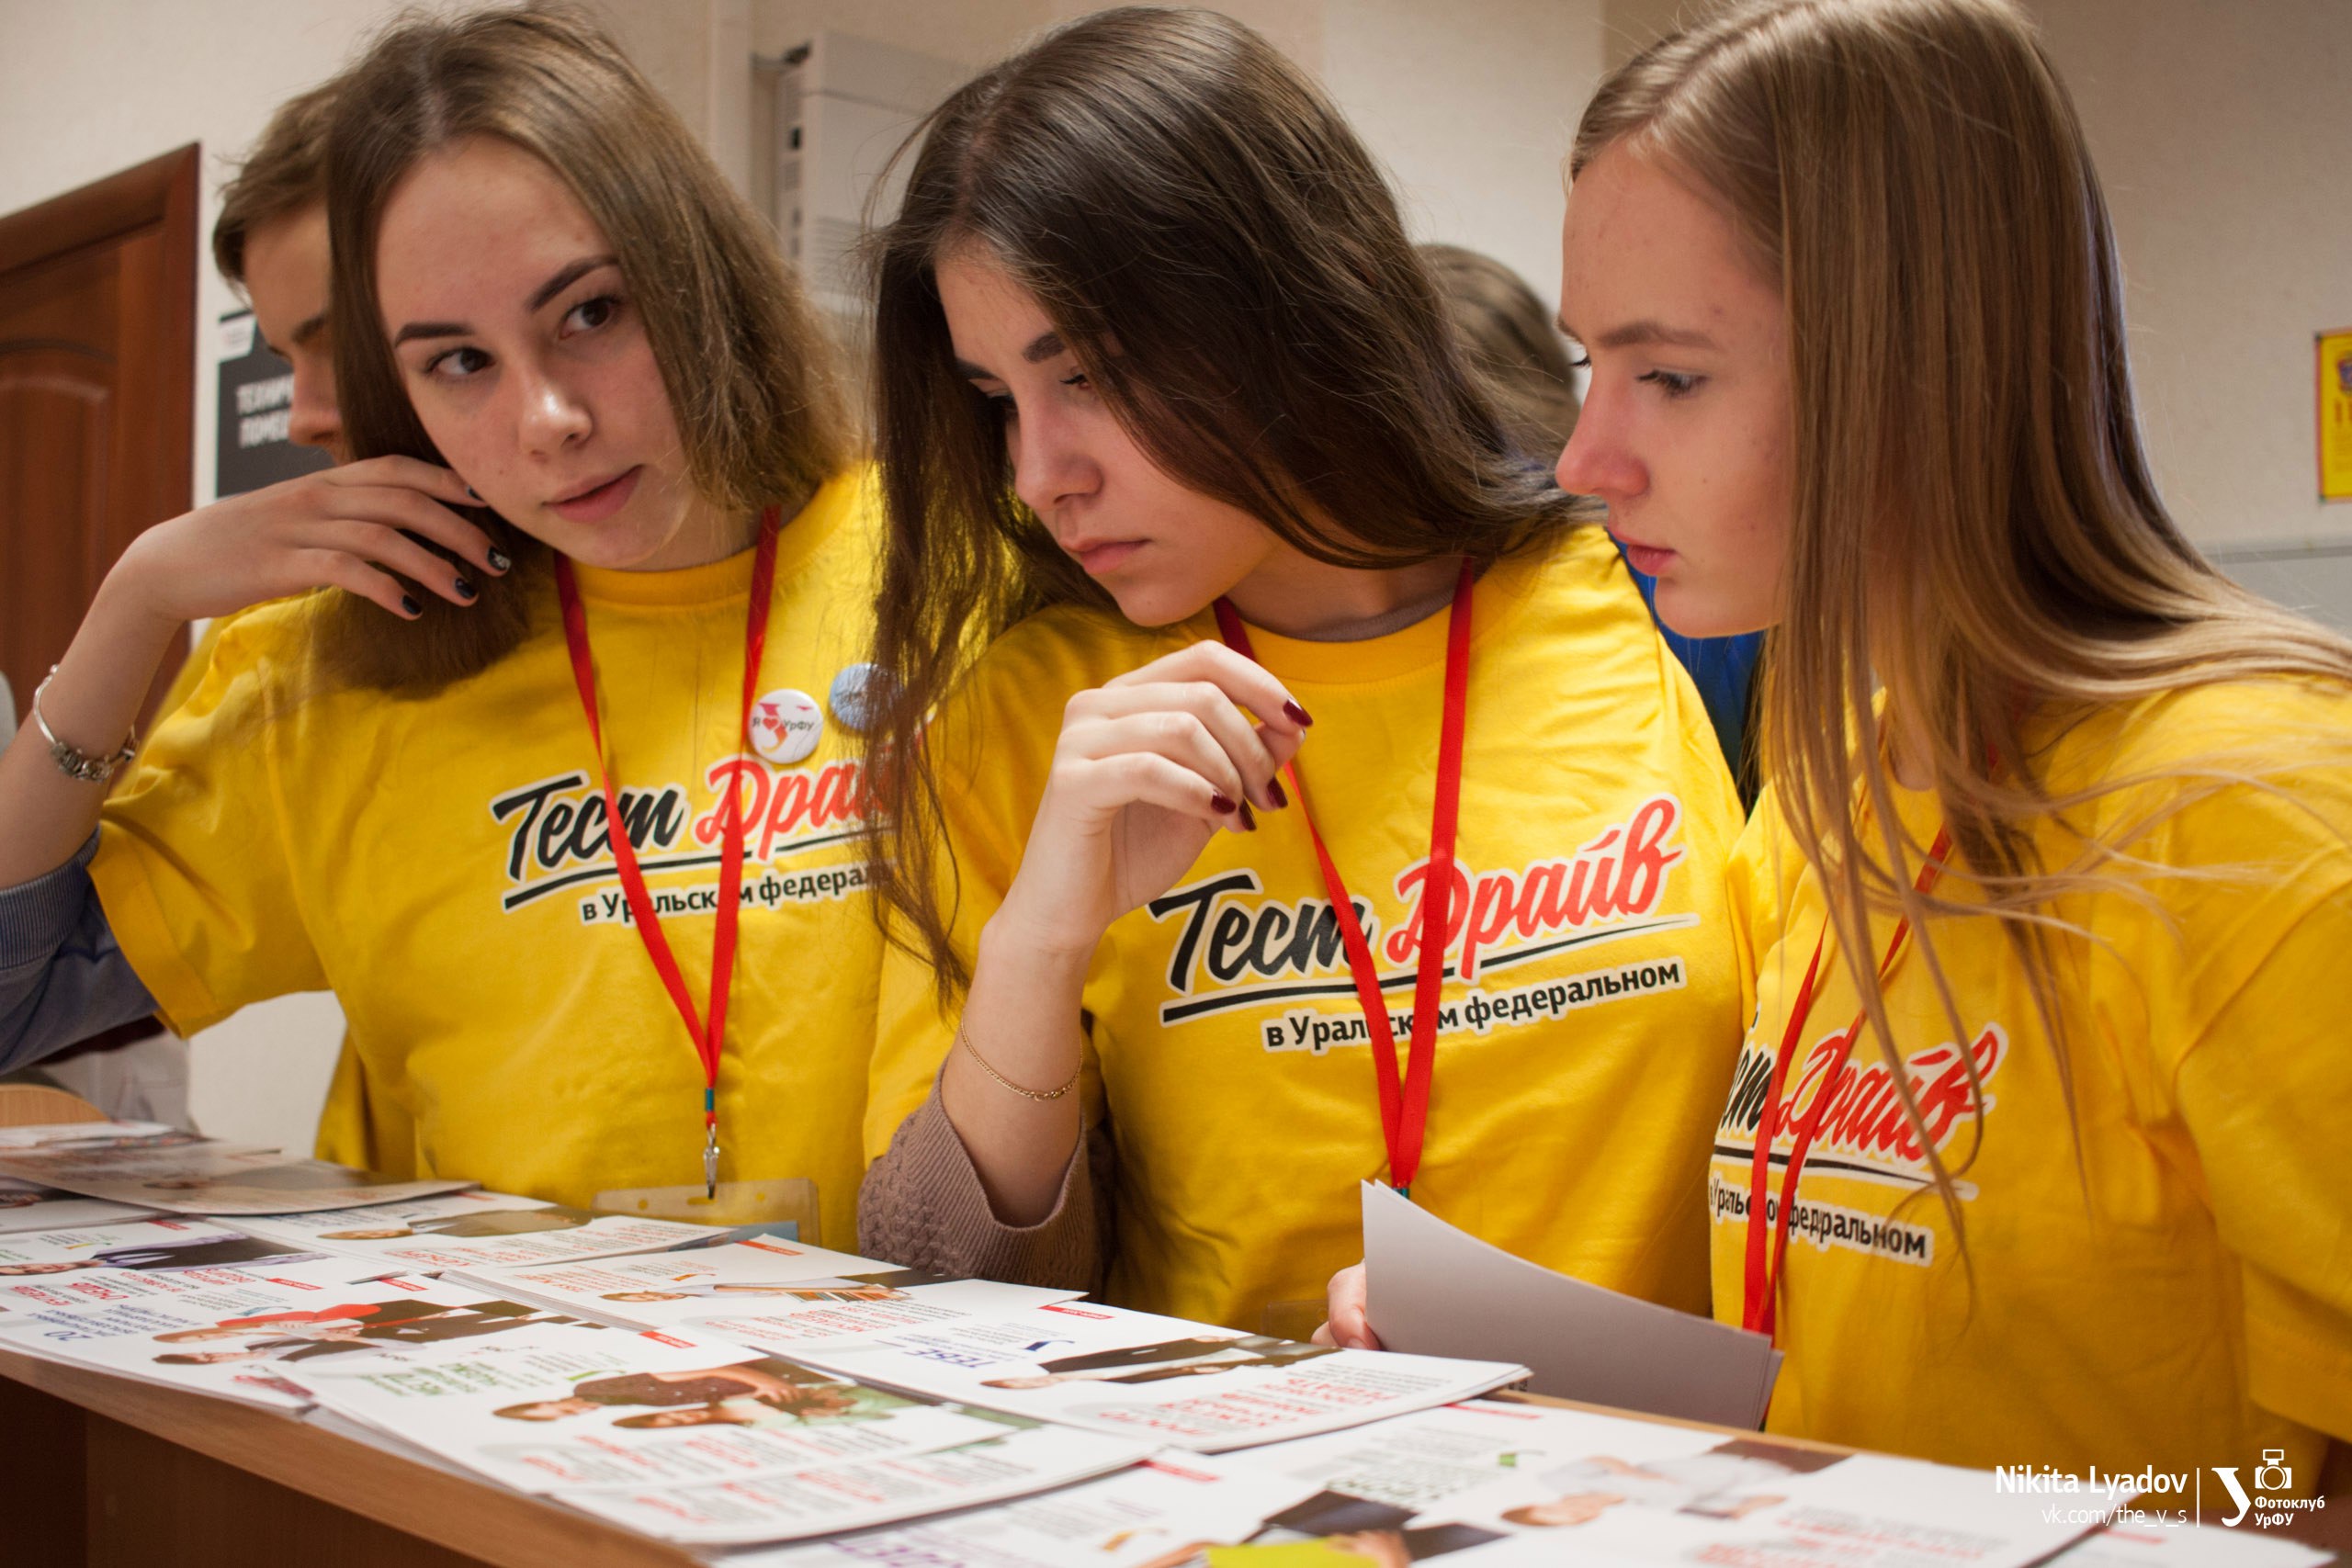 УрФУ приглашает школьников погрузиться в студенческую жизнь на проекте «Тест-драйв в Уральском федеральном» - фото 2